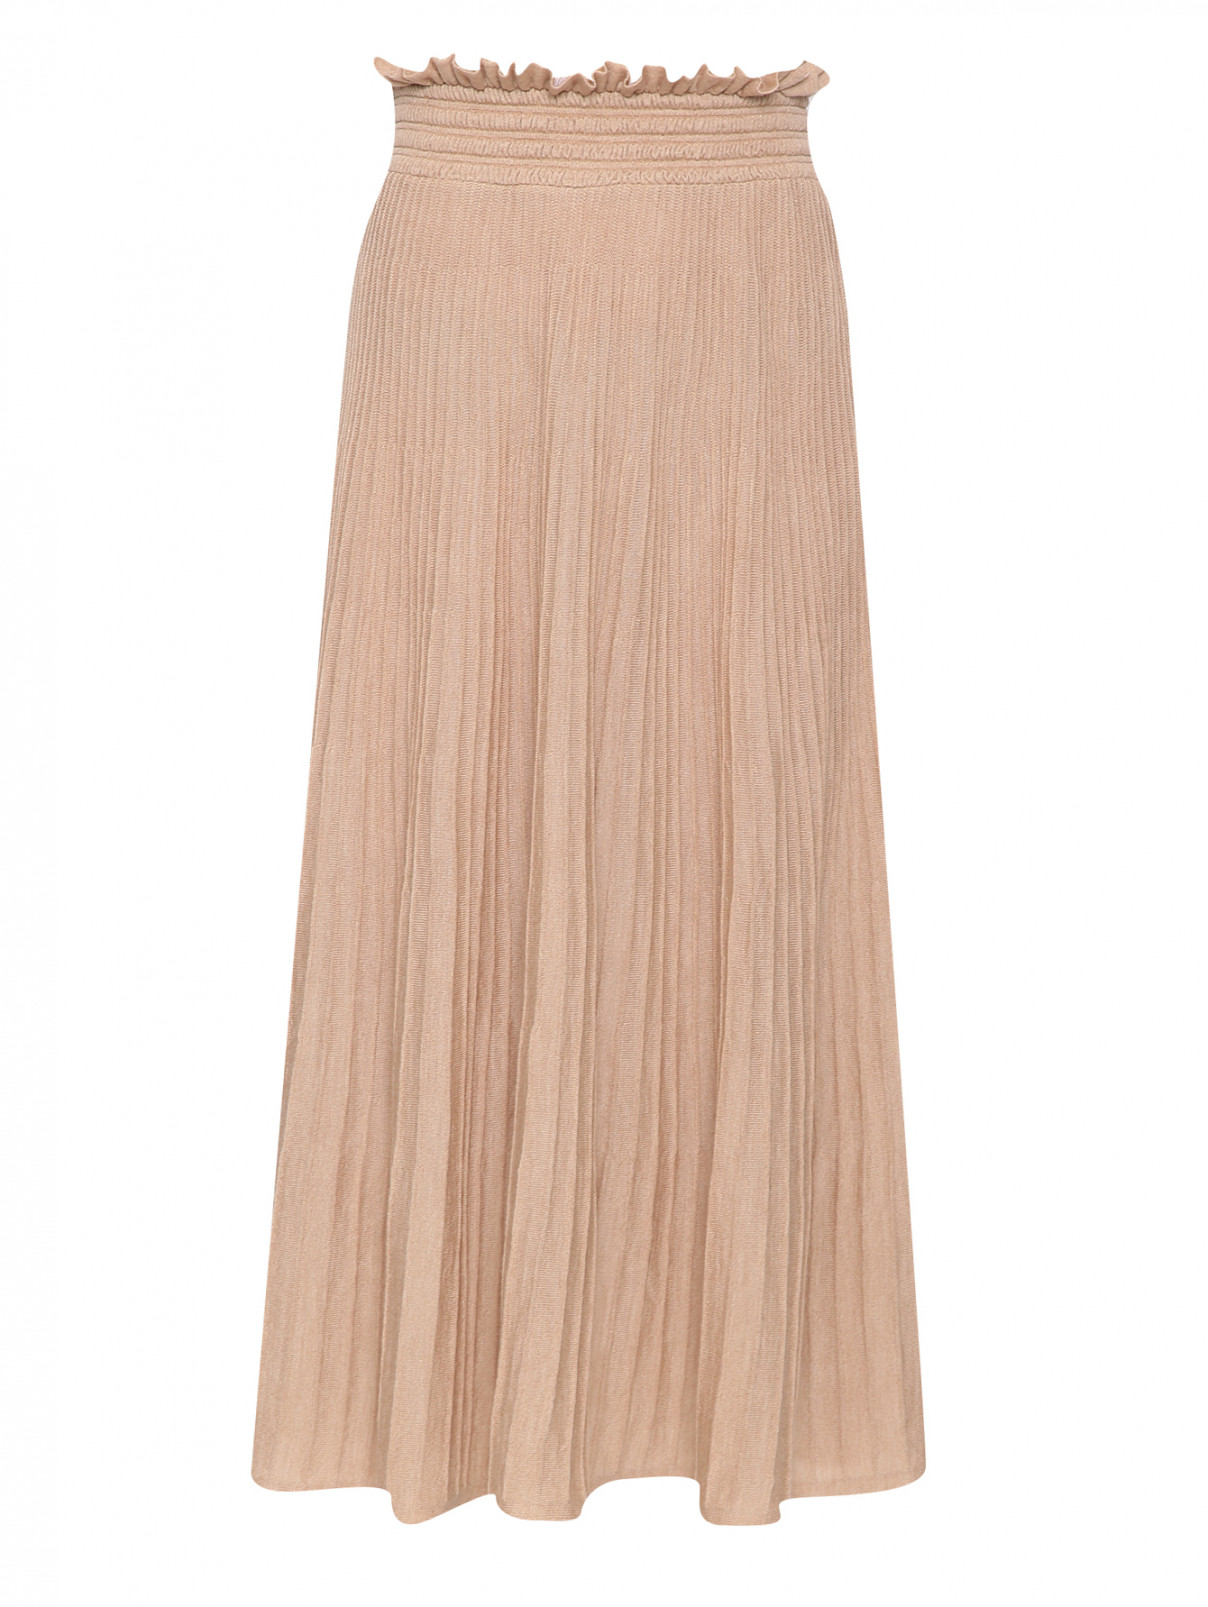 Трикотажная юбка на резинке Moschino Boutique  –  Общий вид  – Цвет:  Бежевый